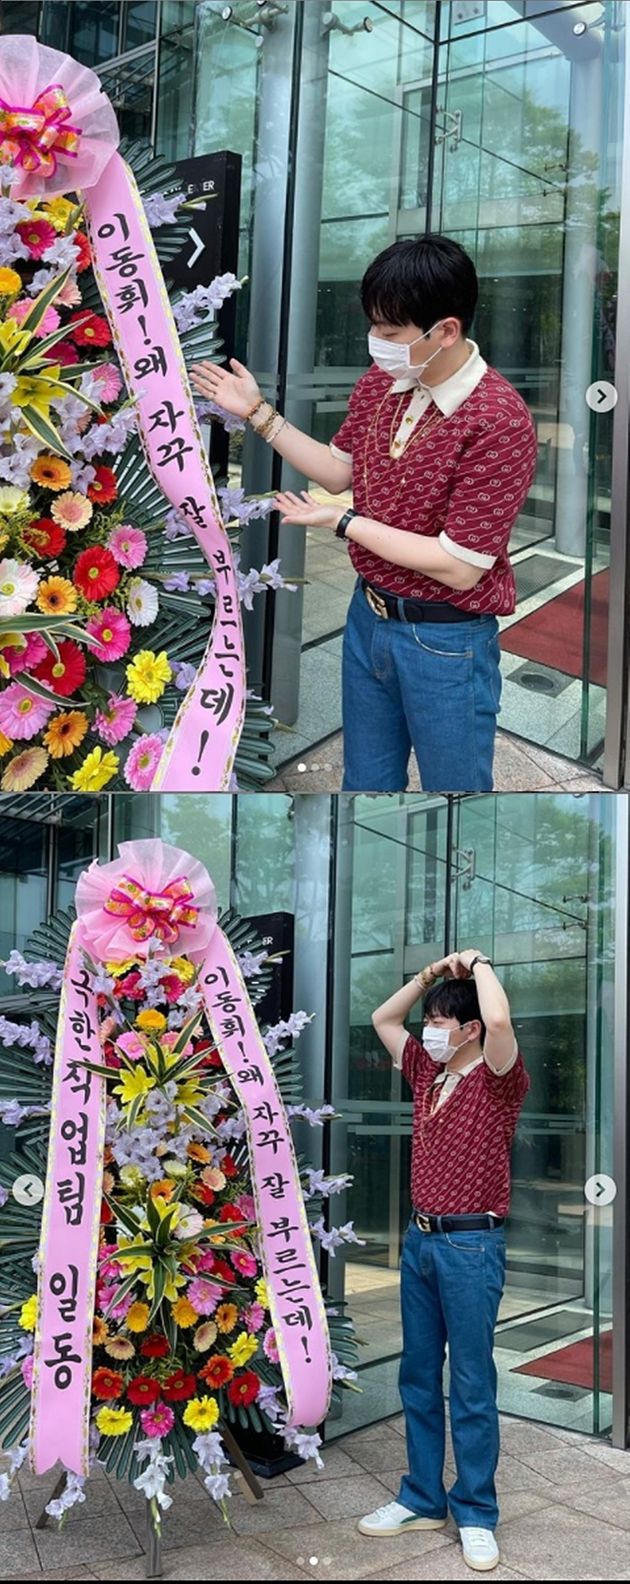 2019년 개봉한 영화 '극한직업' 팀이 이동휘를 위해 '놀면뭐하니?' 촬영 현장에 화환을 선물했다.